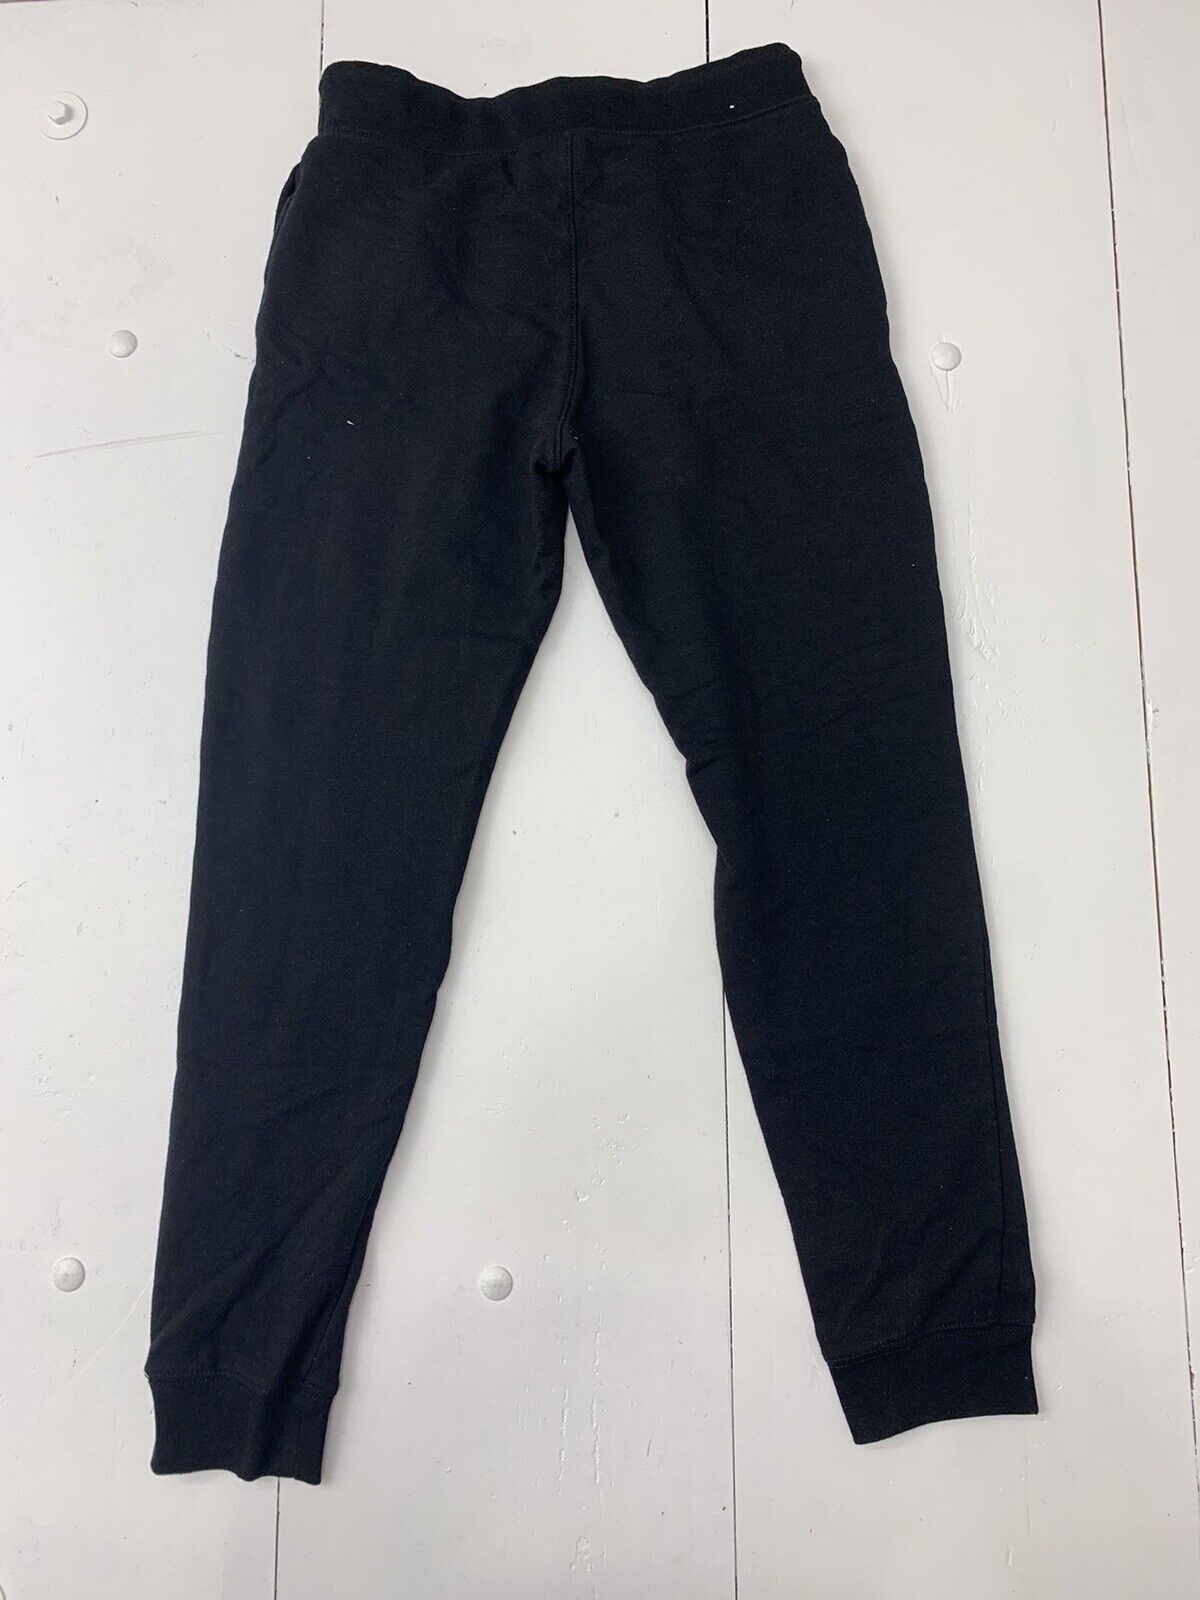 Aeropostale Mens Black Sweatpants Size XS - beyond exchange